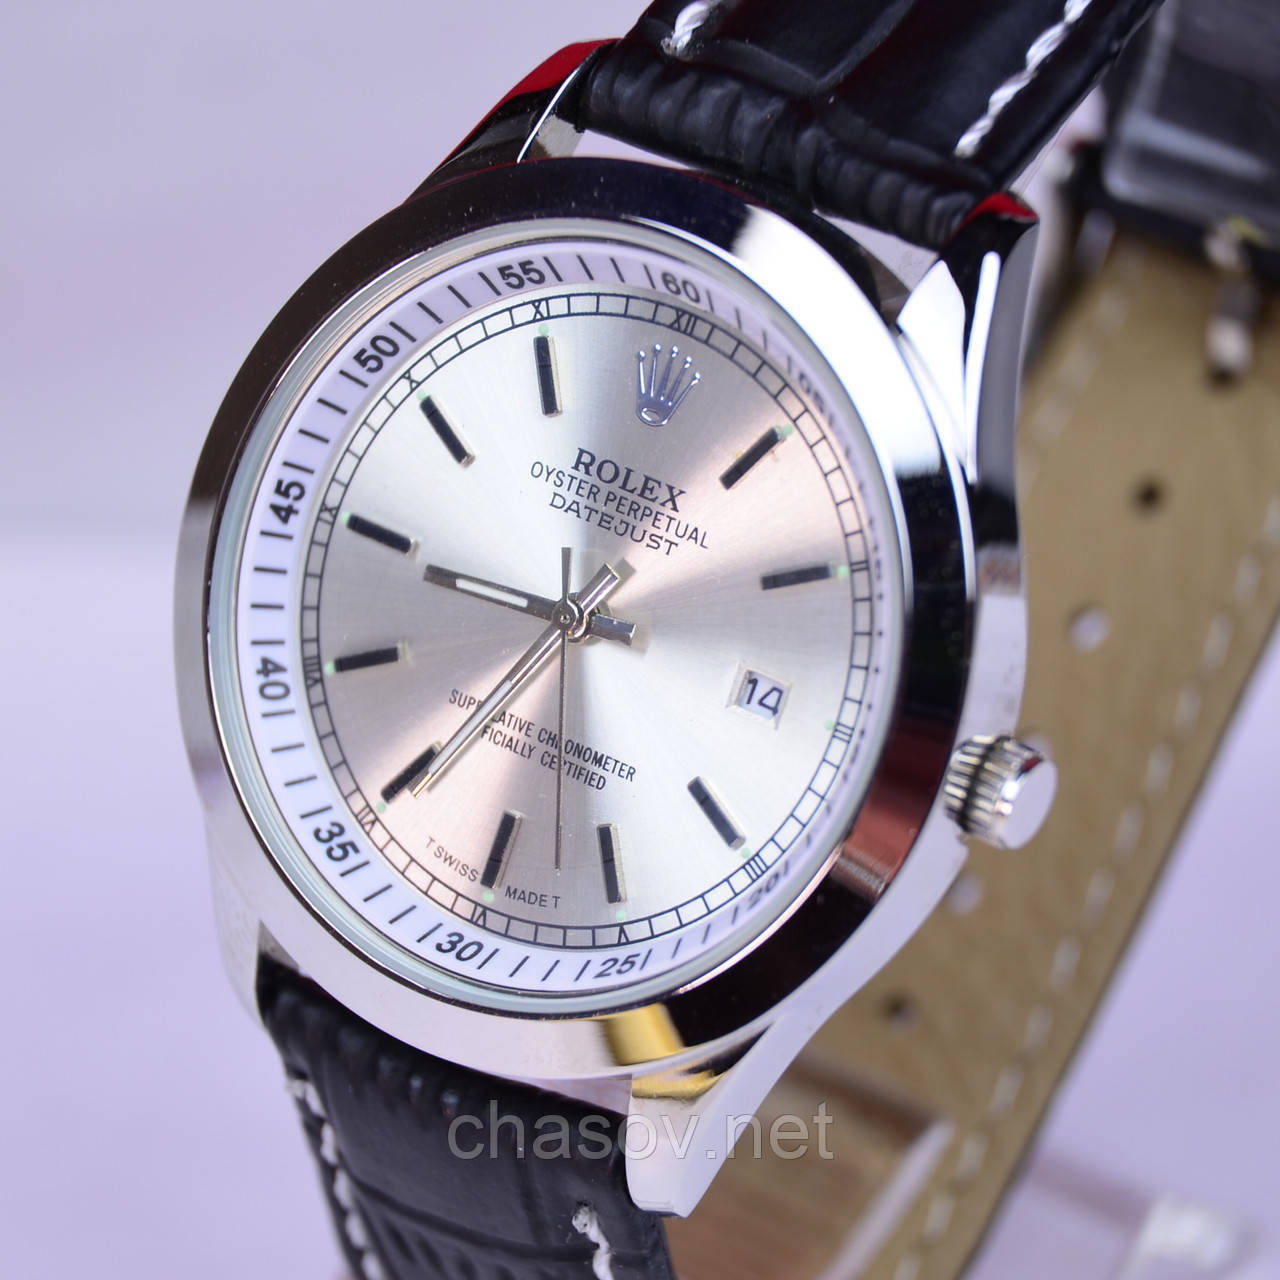 

Наручные часы Rolex с календарем